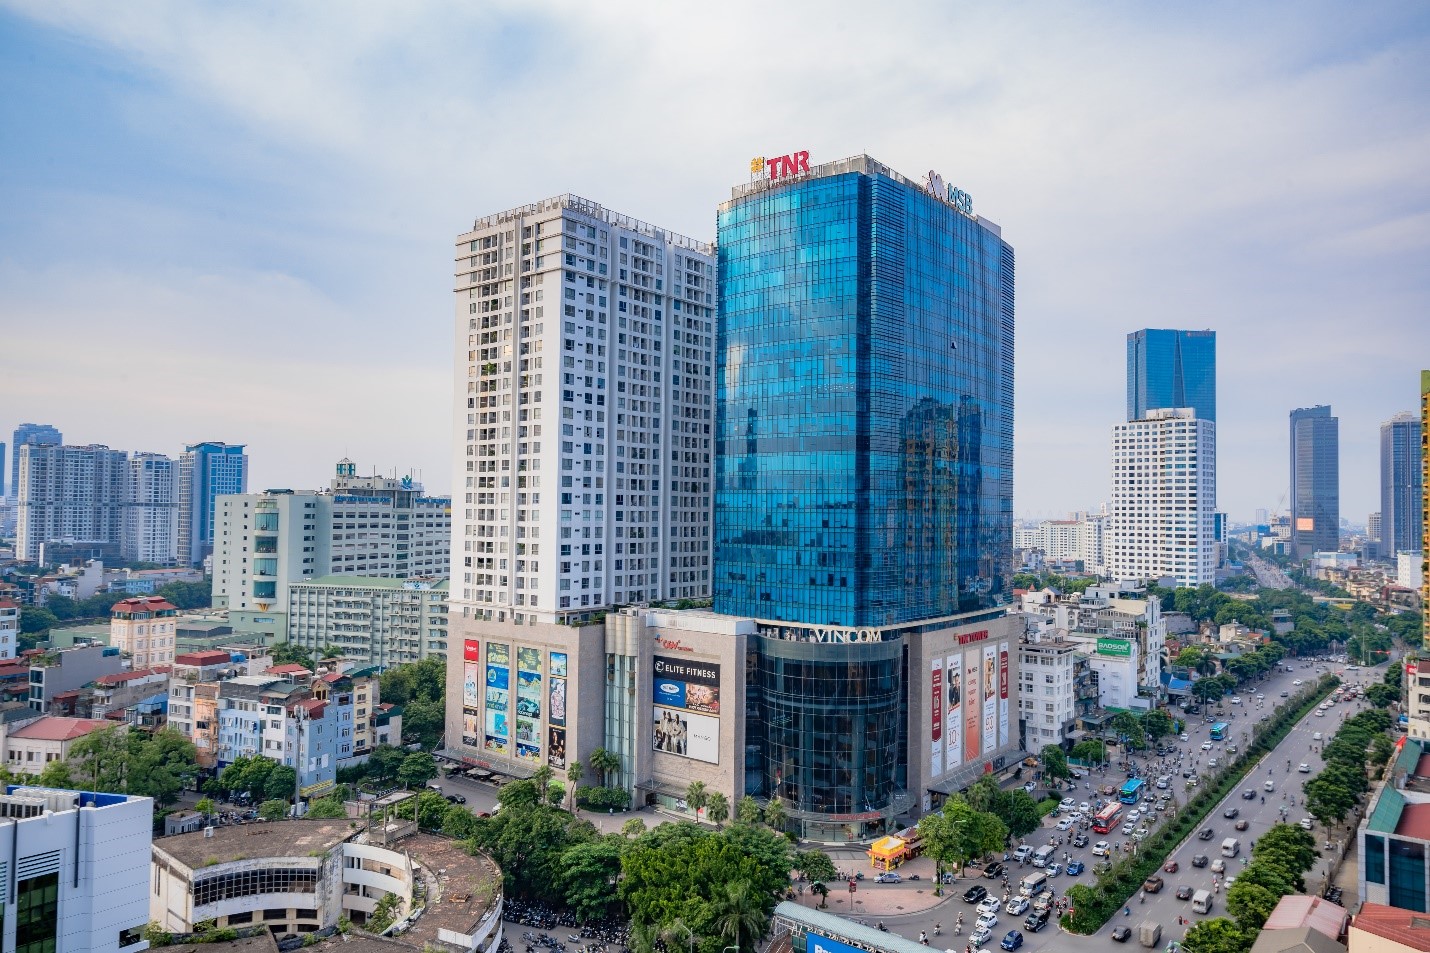 Văn phòng hạng A TNR Tower (54A Nguyễn Chí Thanh, Hà Nội) miễn phí thuê lên đến 12 tháng